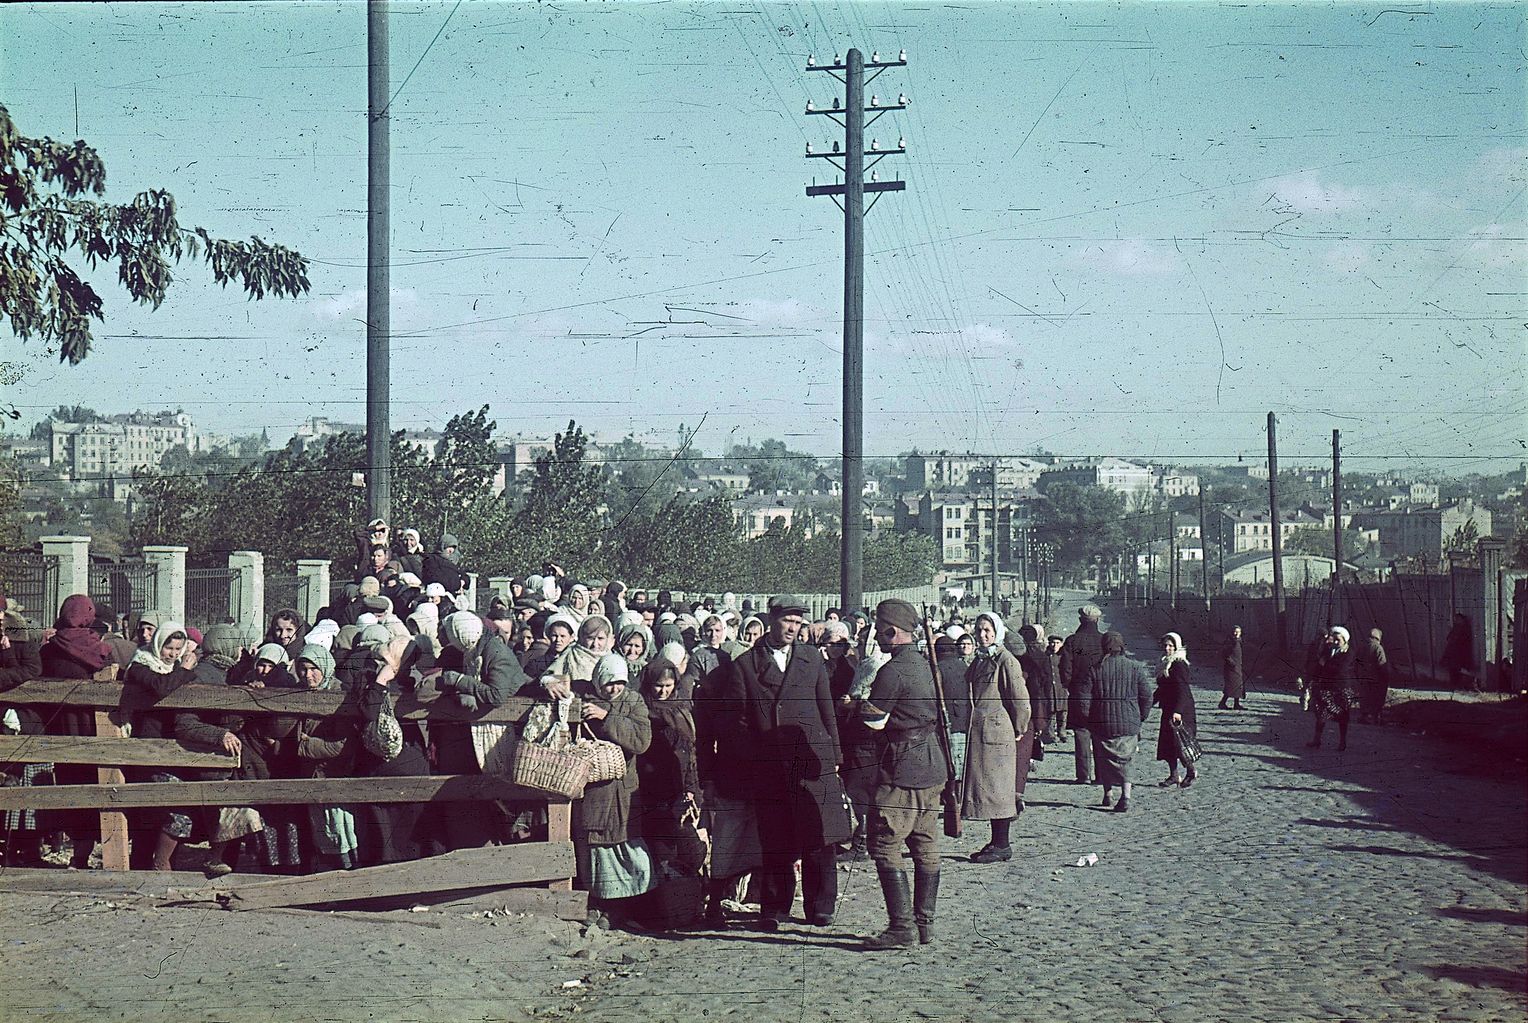 Wehrmacht ed Einsatzgruppen hanno concordato l'omicidio di tutti gli ebrei di Kiev. La foto di Johannes Hähle mostra un "ausiliario" ucraino a guardia di un "trasporto ebraico". La foto è stata scattata dopo il massacro del 29-30 settembre.